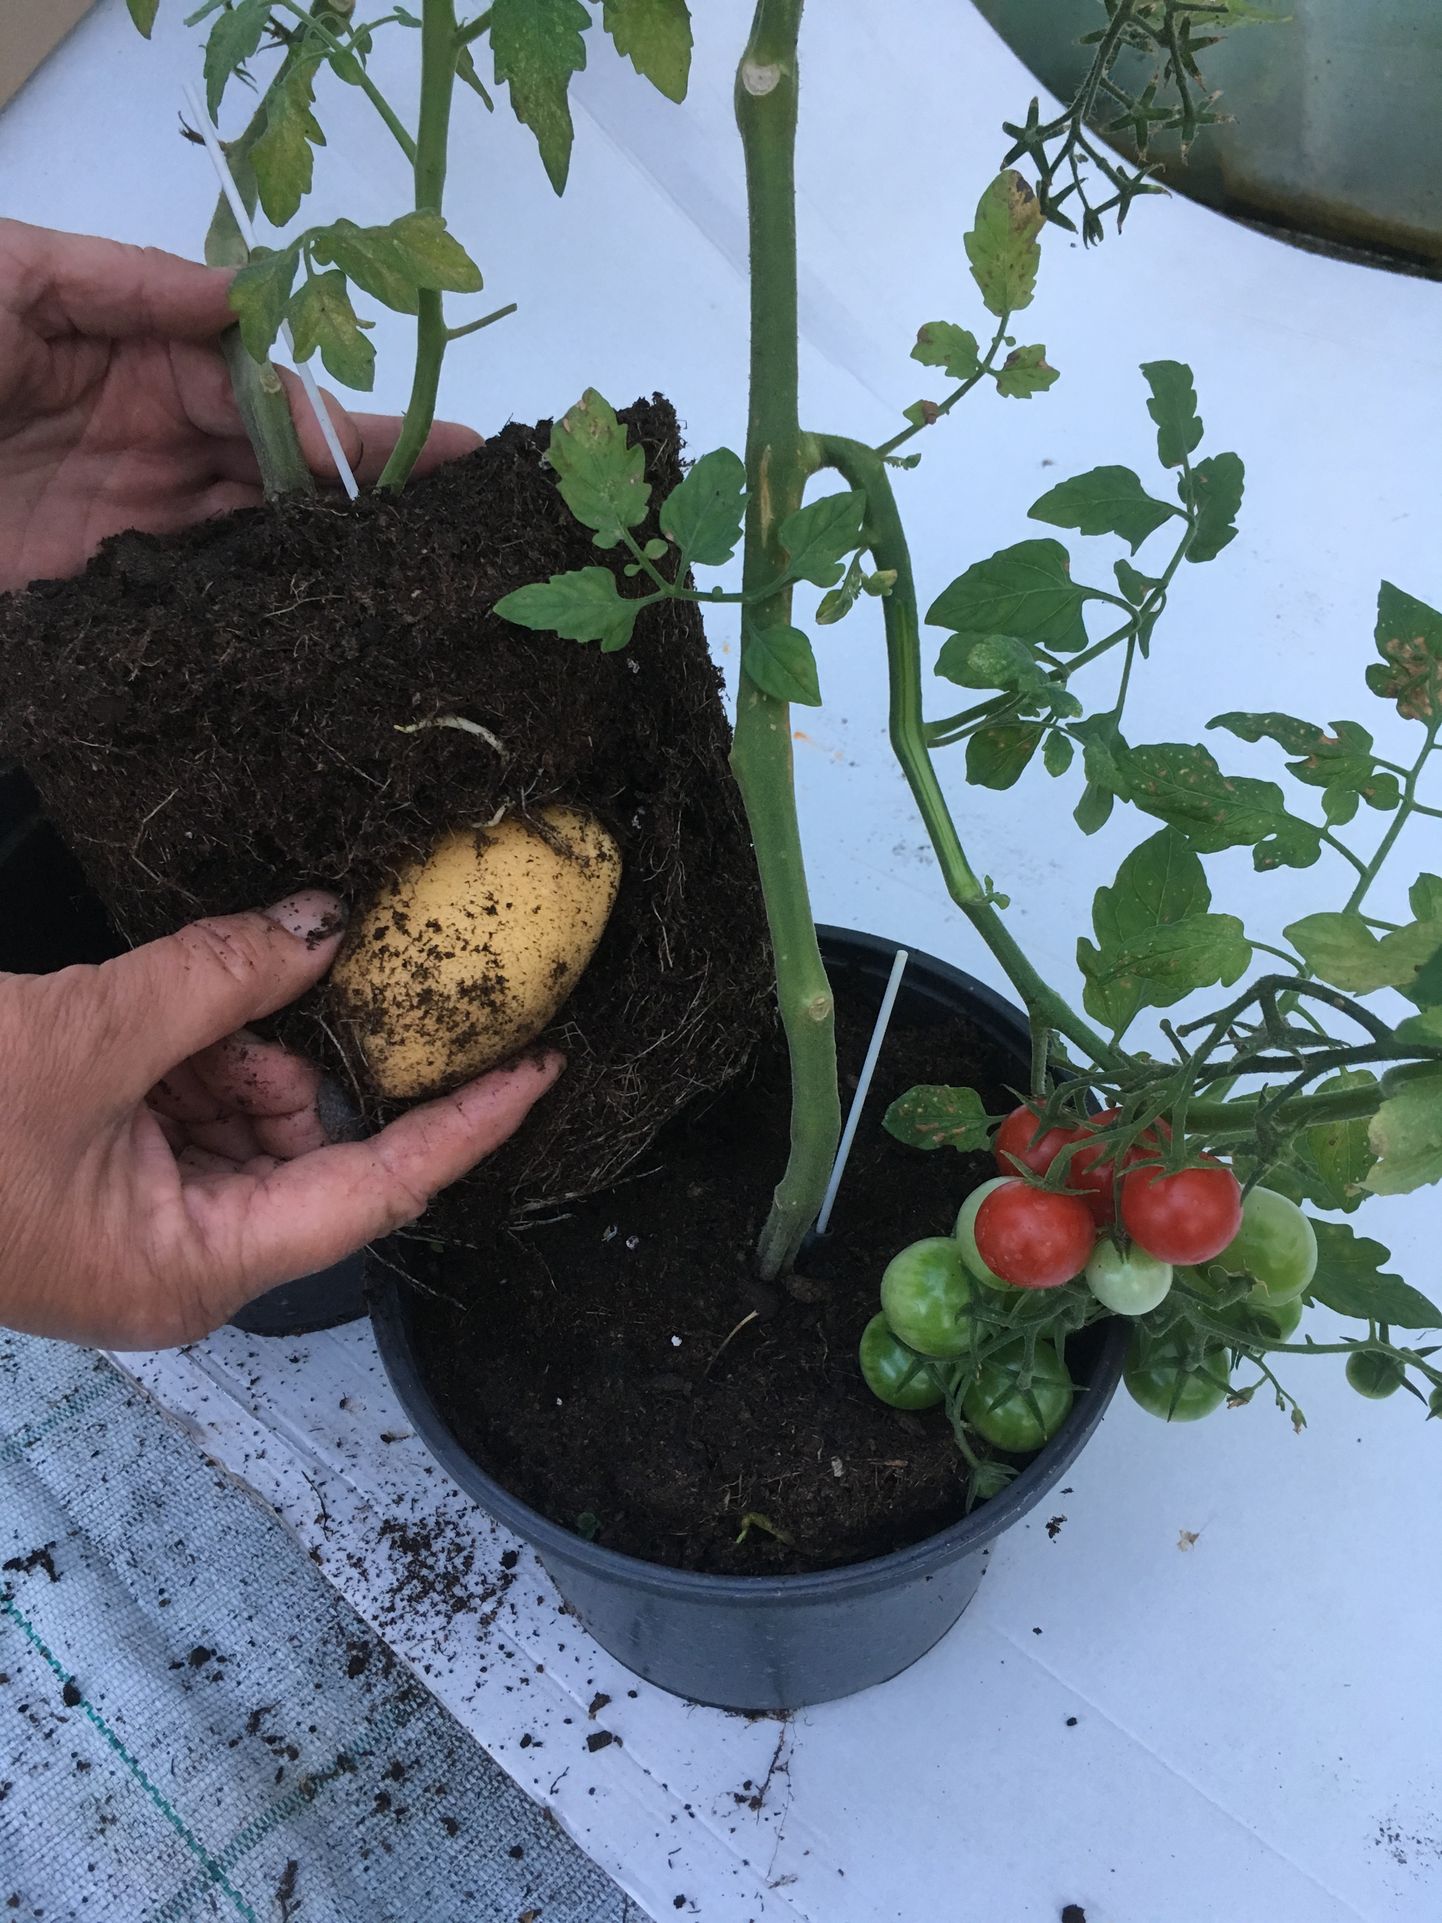 Läinud pühapäeval oli Sillametsa talus ühel tomatkartulil küljes punaseid tomateid, mullapallis üks suur mugul ja lisaks kaks väikest veel mulla sees peidus.